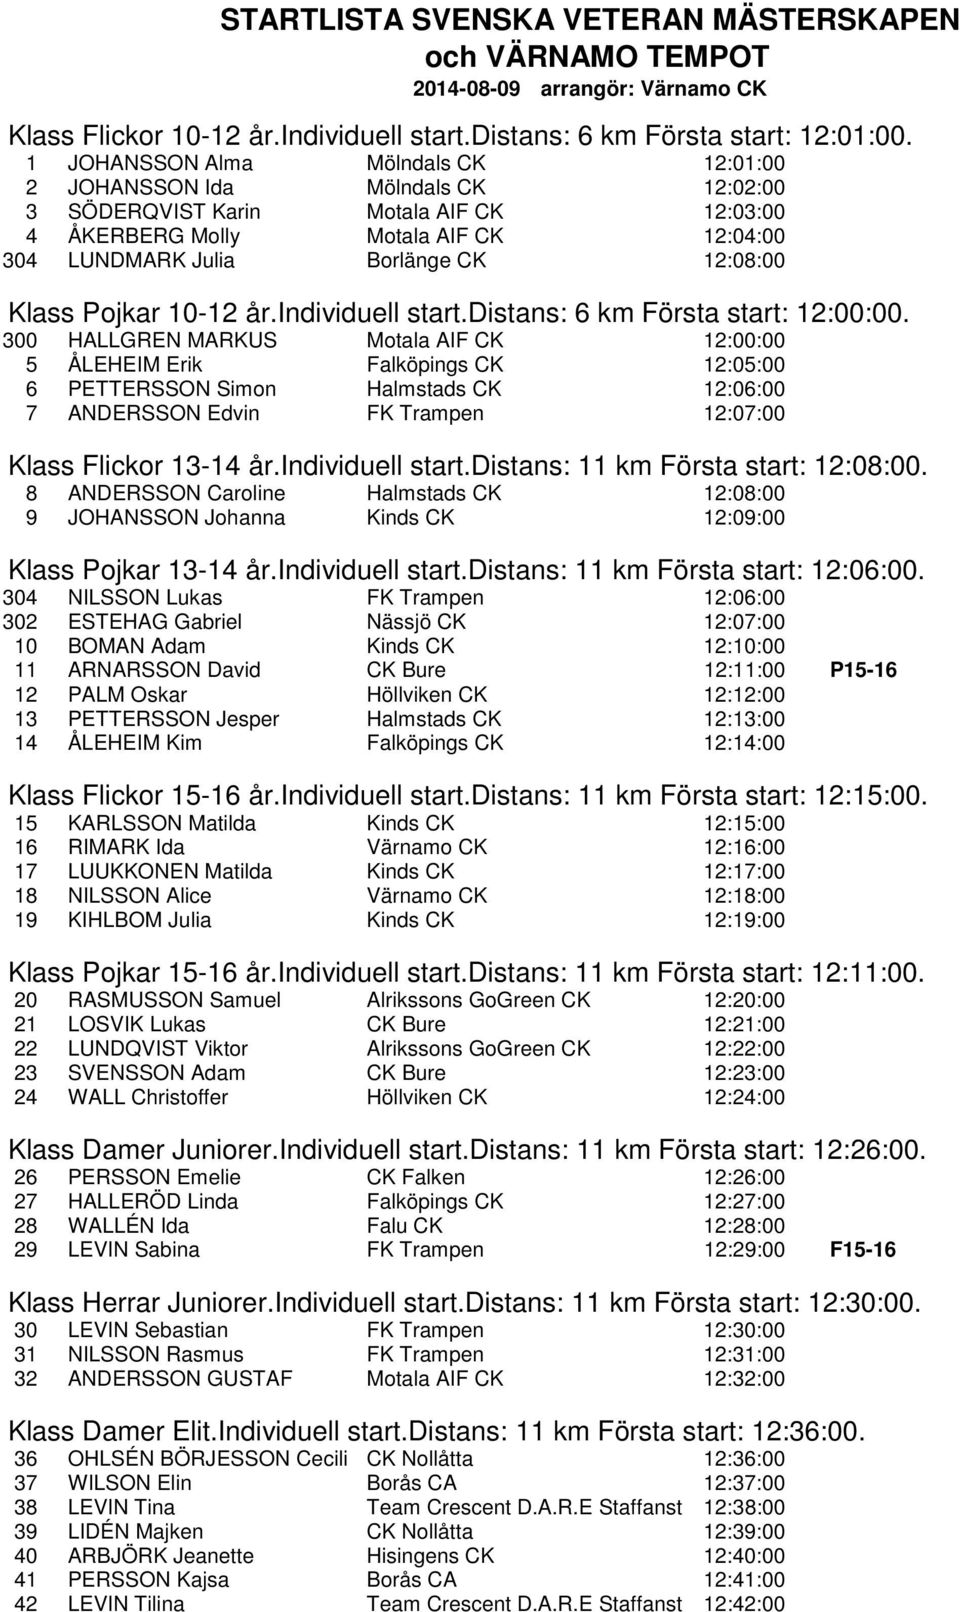 Klass Pojkar 10-12 år.individuell start.distans: 6 km Första start: 12:00:00.